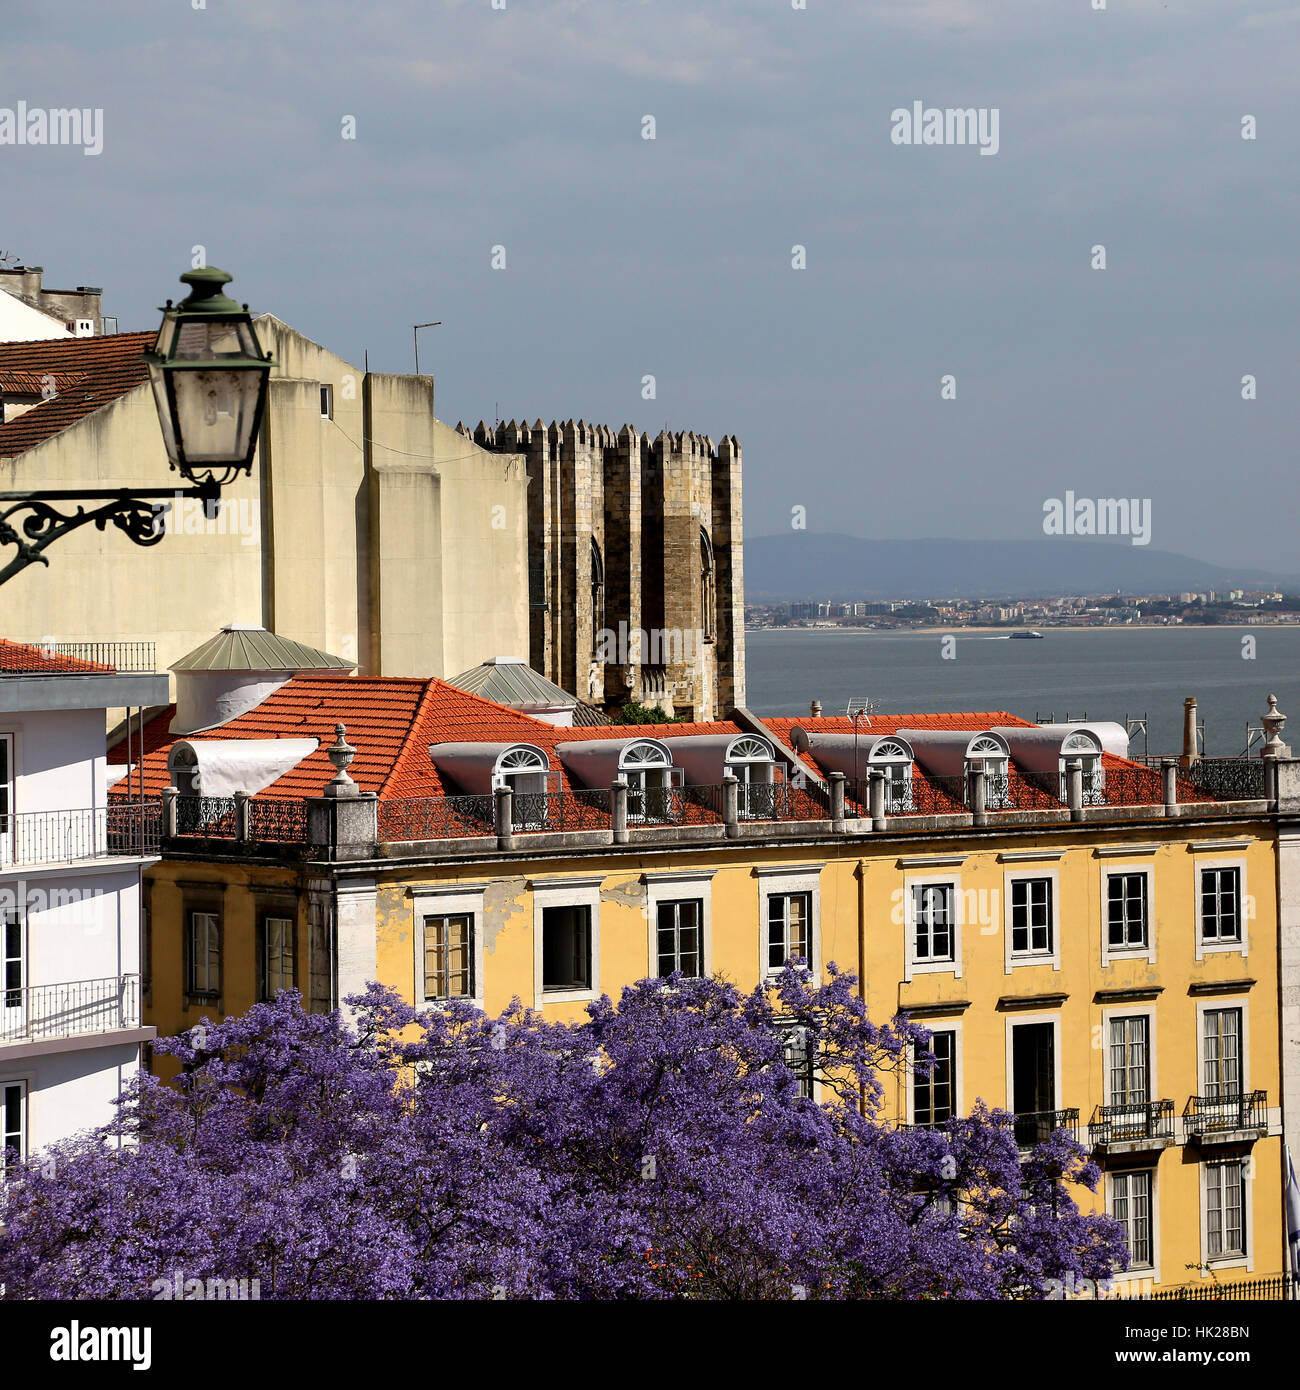 Imágenes de Lisboa, Portugal. Arquitectura y monumentos históricos de Lisboa. Foto de stock